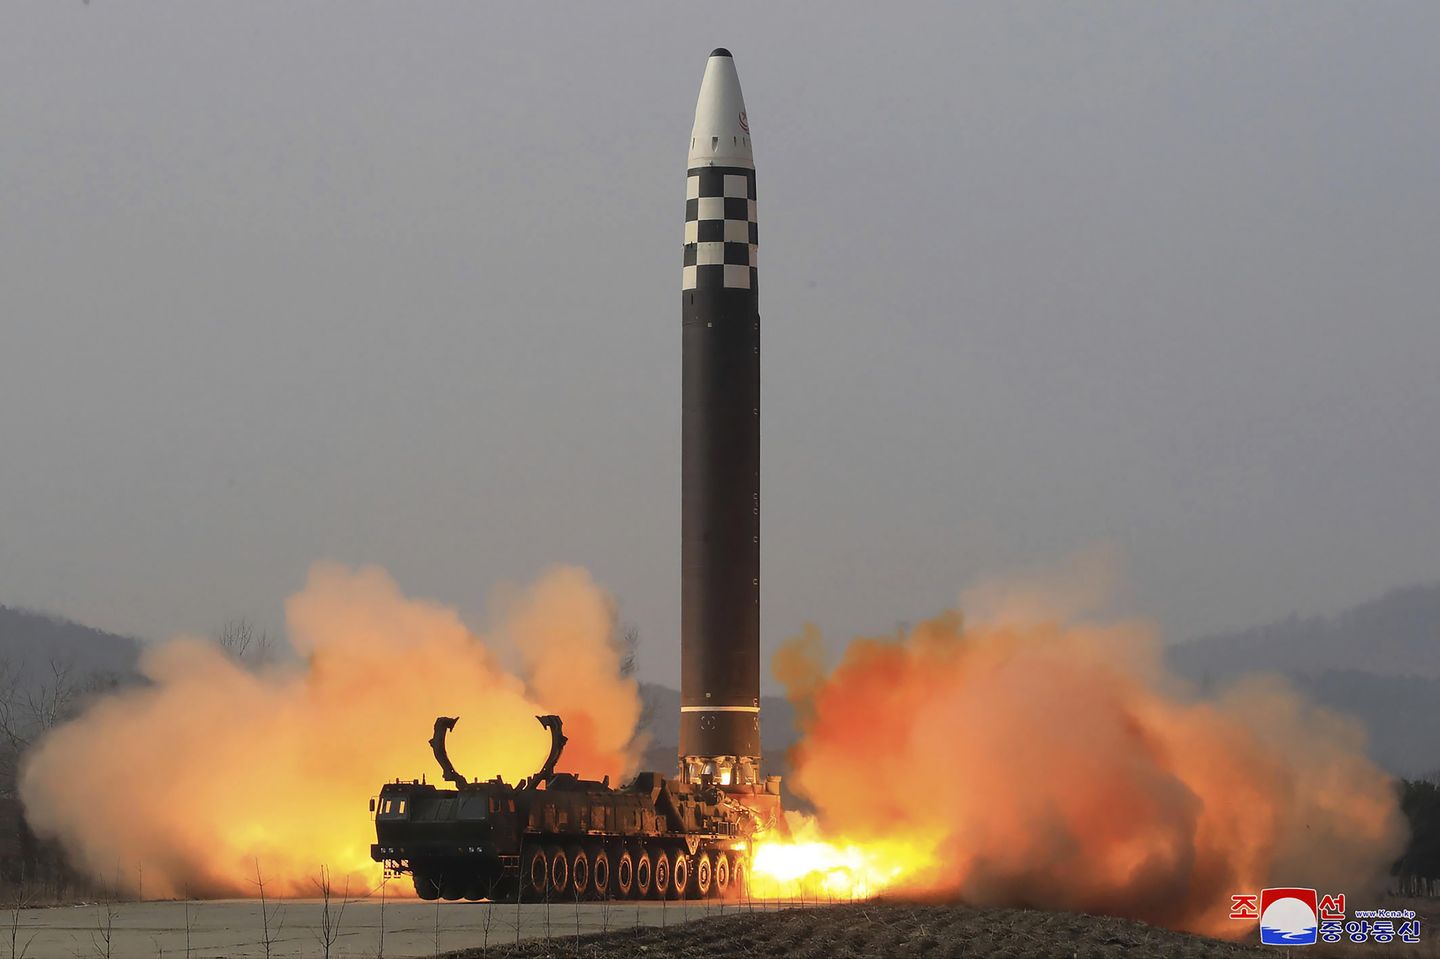 Güney Kore, Kuzey'in gelişmiş füze testi hakkında yalan söylediğini söyledi